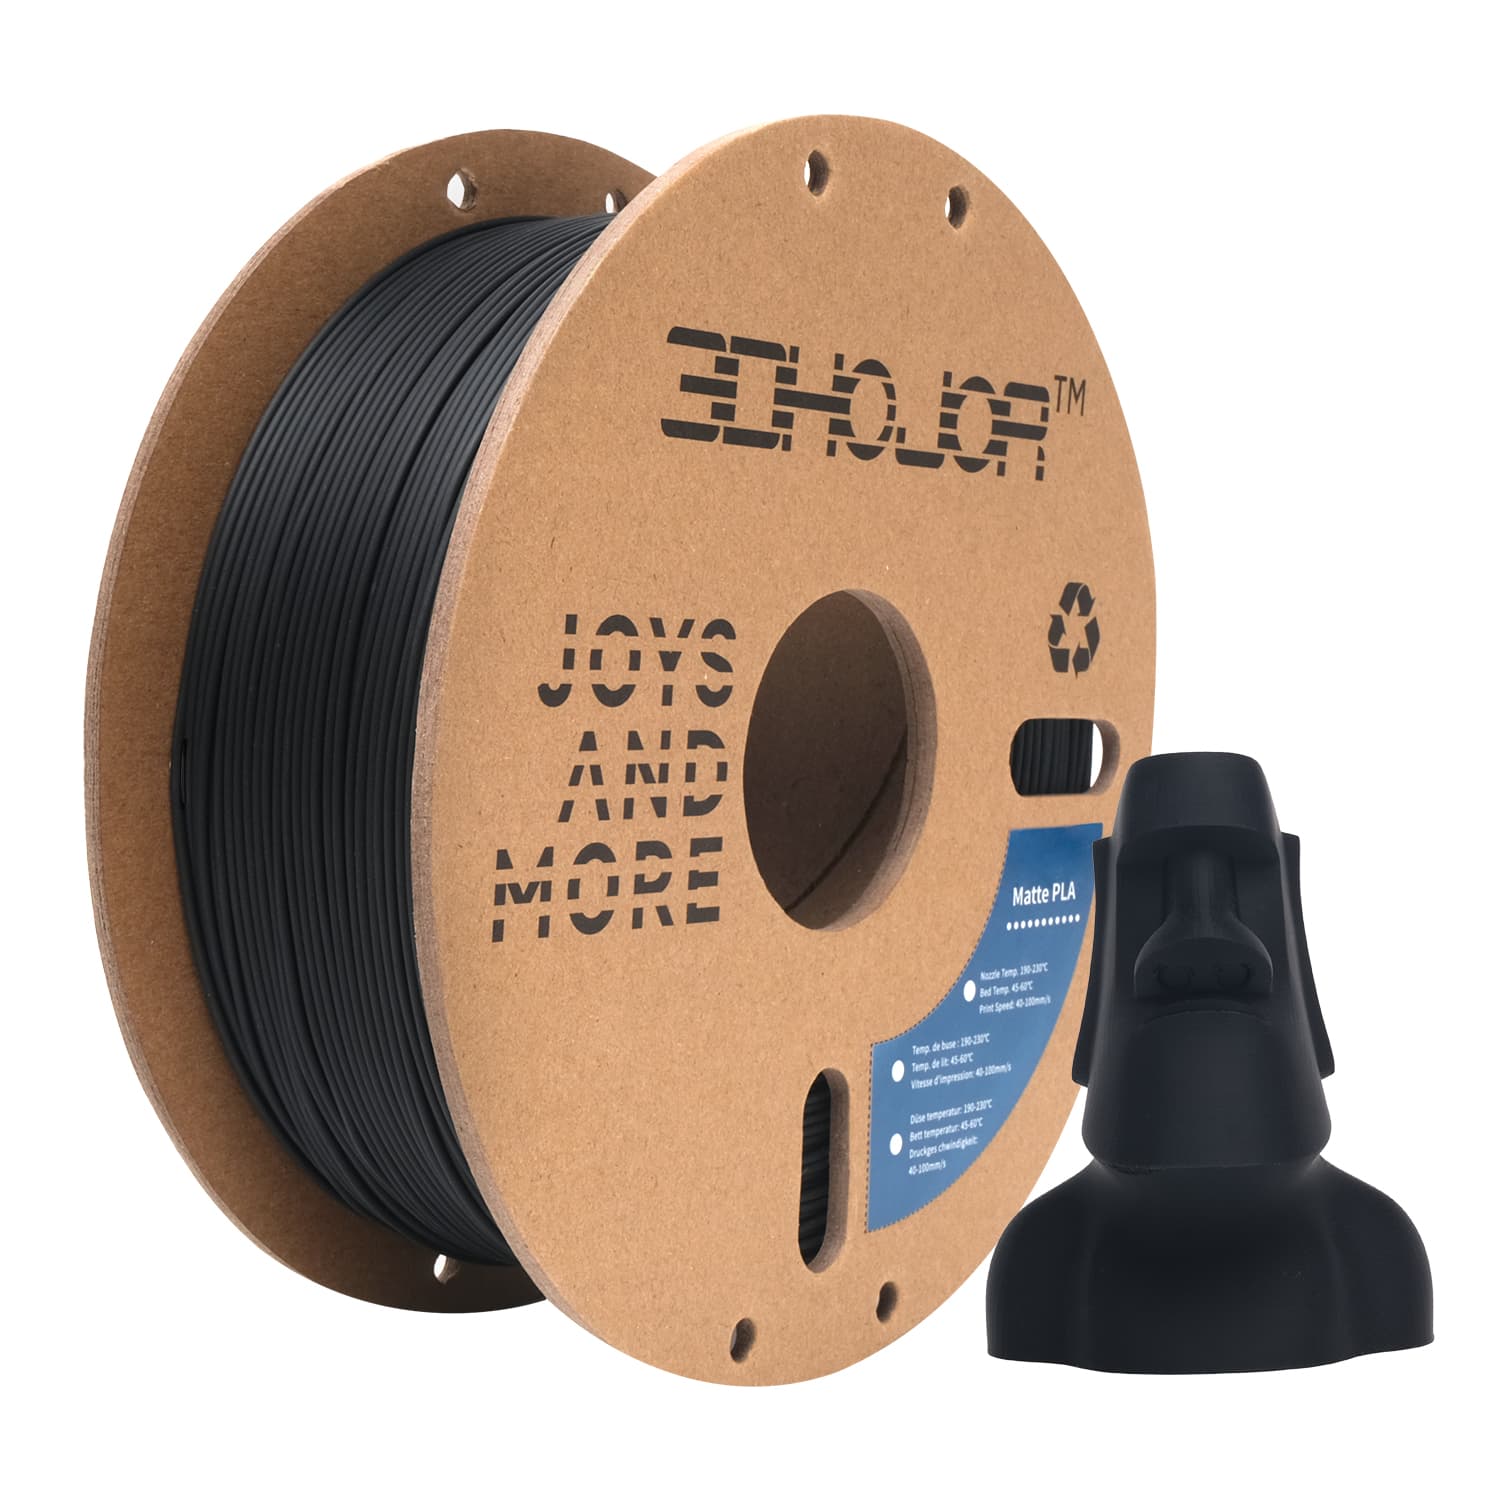 3DHoJor Matte PLA Filament 1.75mm Black, PLA 3D Printer Filament, 1kg Spool  (2.2lbs) PLA Filament